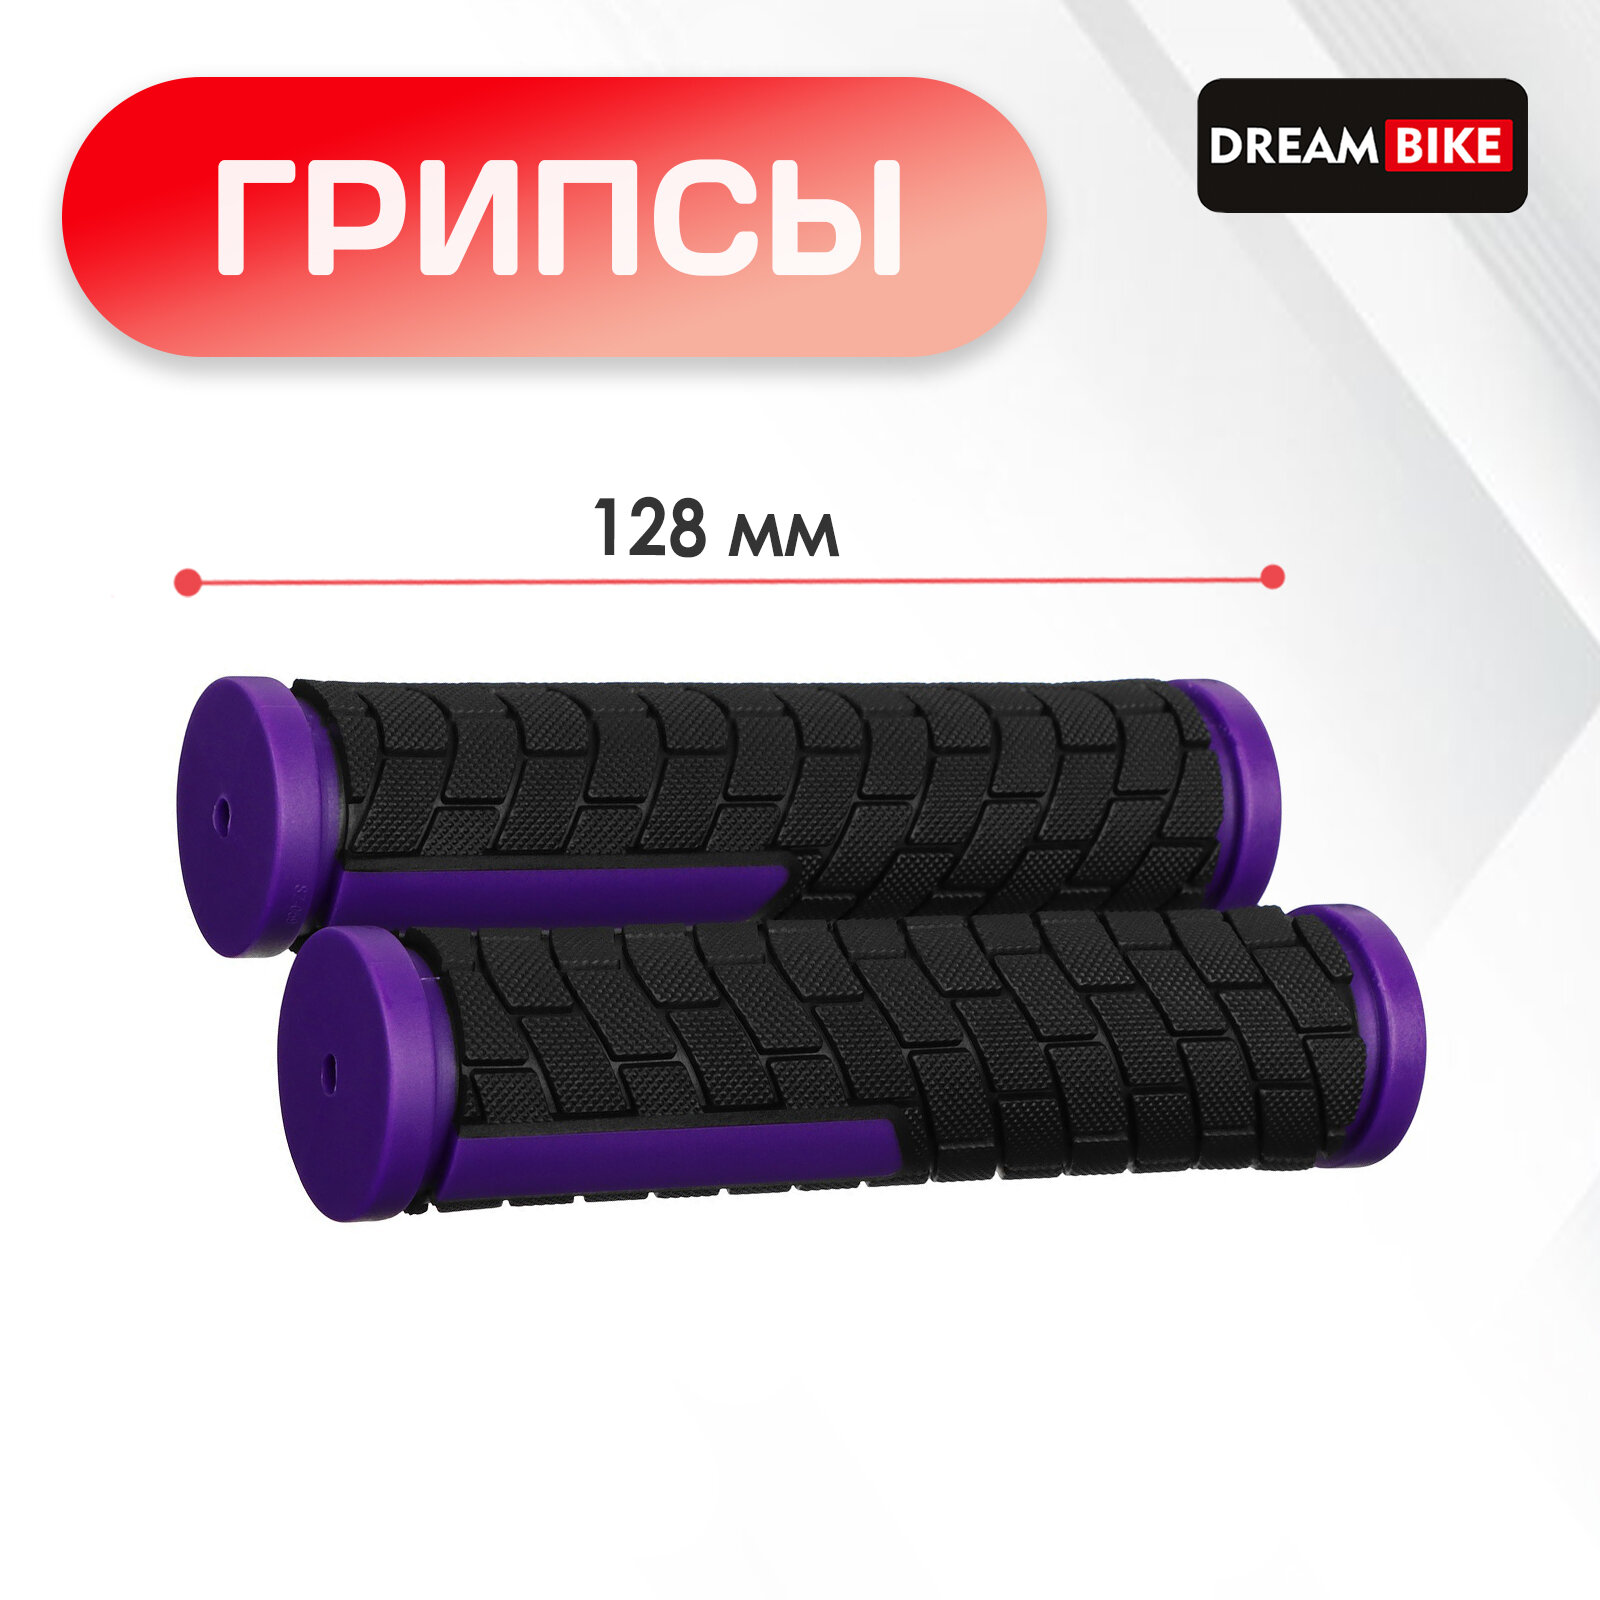 Грипсы 128 мм Dream Bike посадочный диаметр 222 мм цвет чёрный фиолетовый